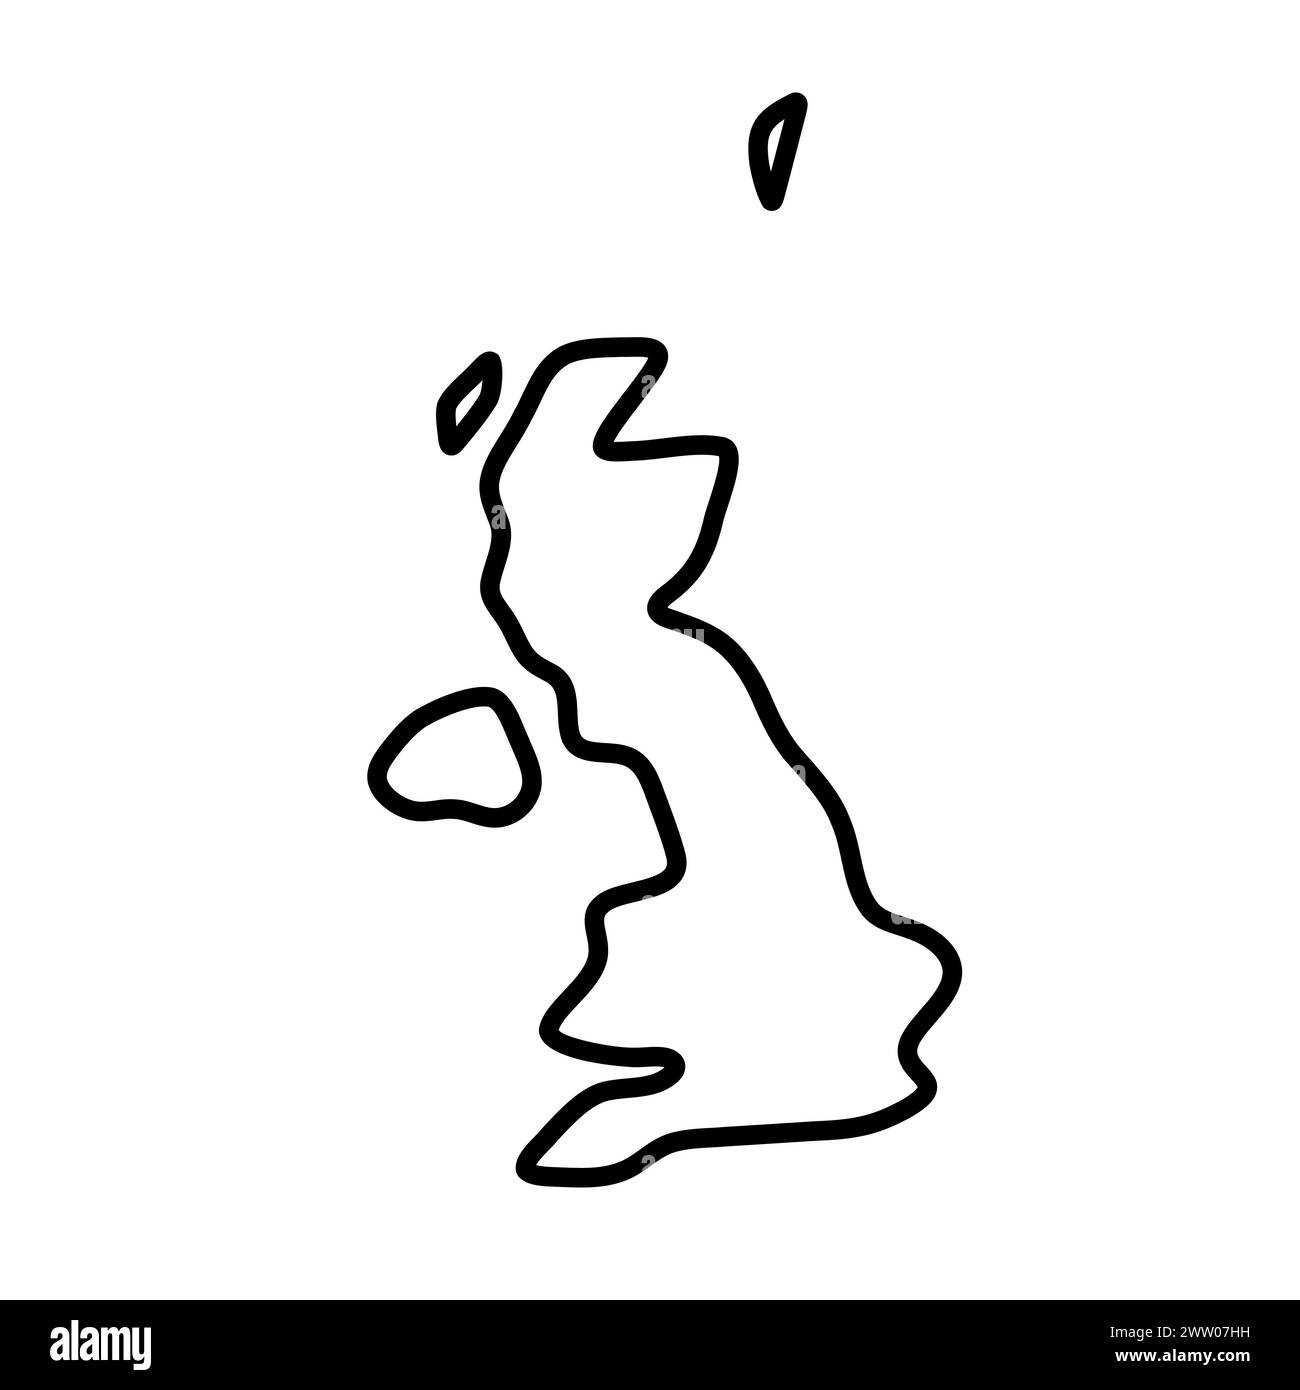 Vereinfachte Landkarte des Vereinigten Königreichs Großbritannien und Nordirland. Dicke schwarze Kontur. Einfaches Vektorsymbol Stock Vektor